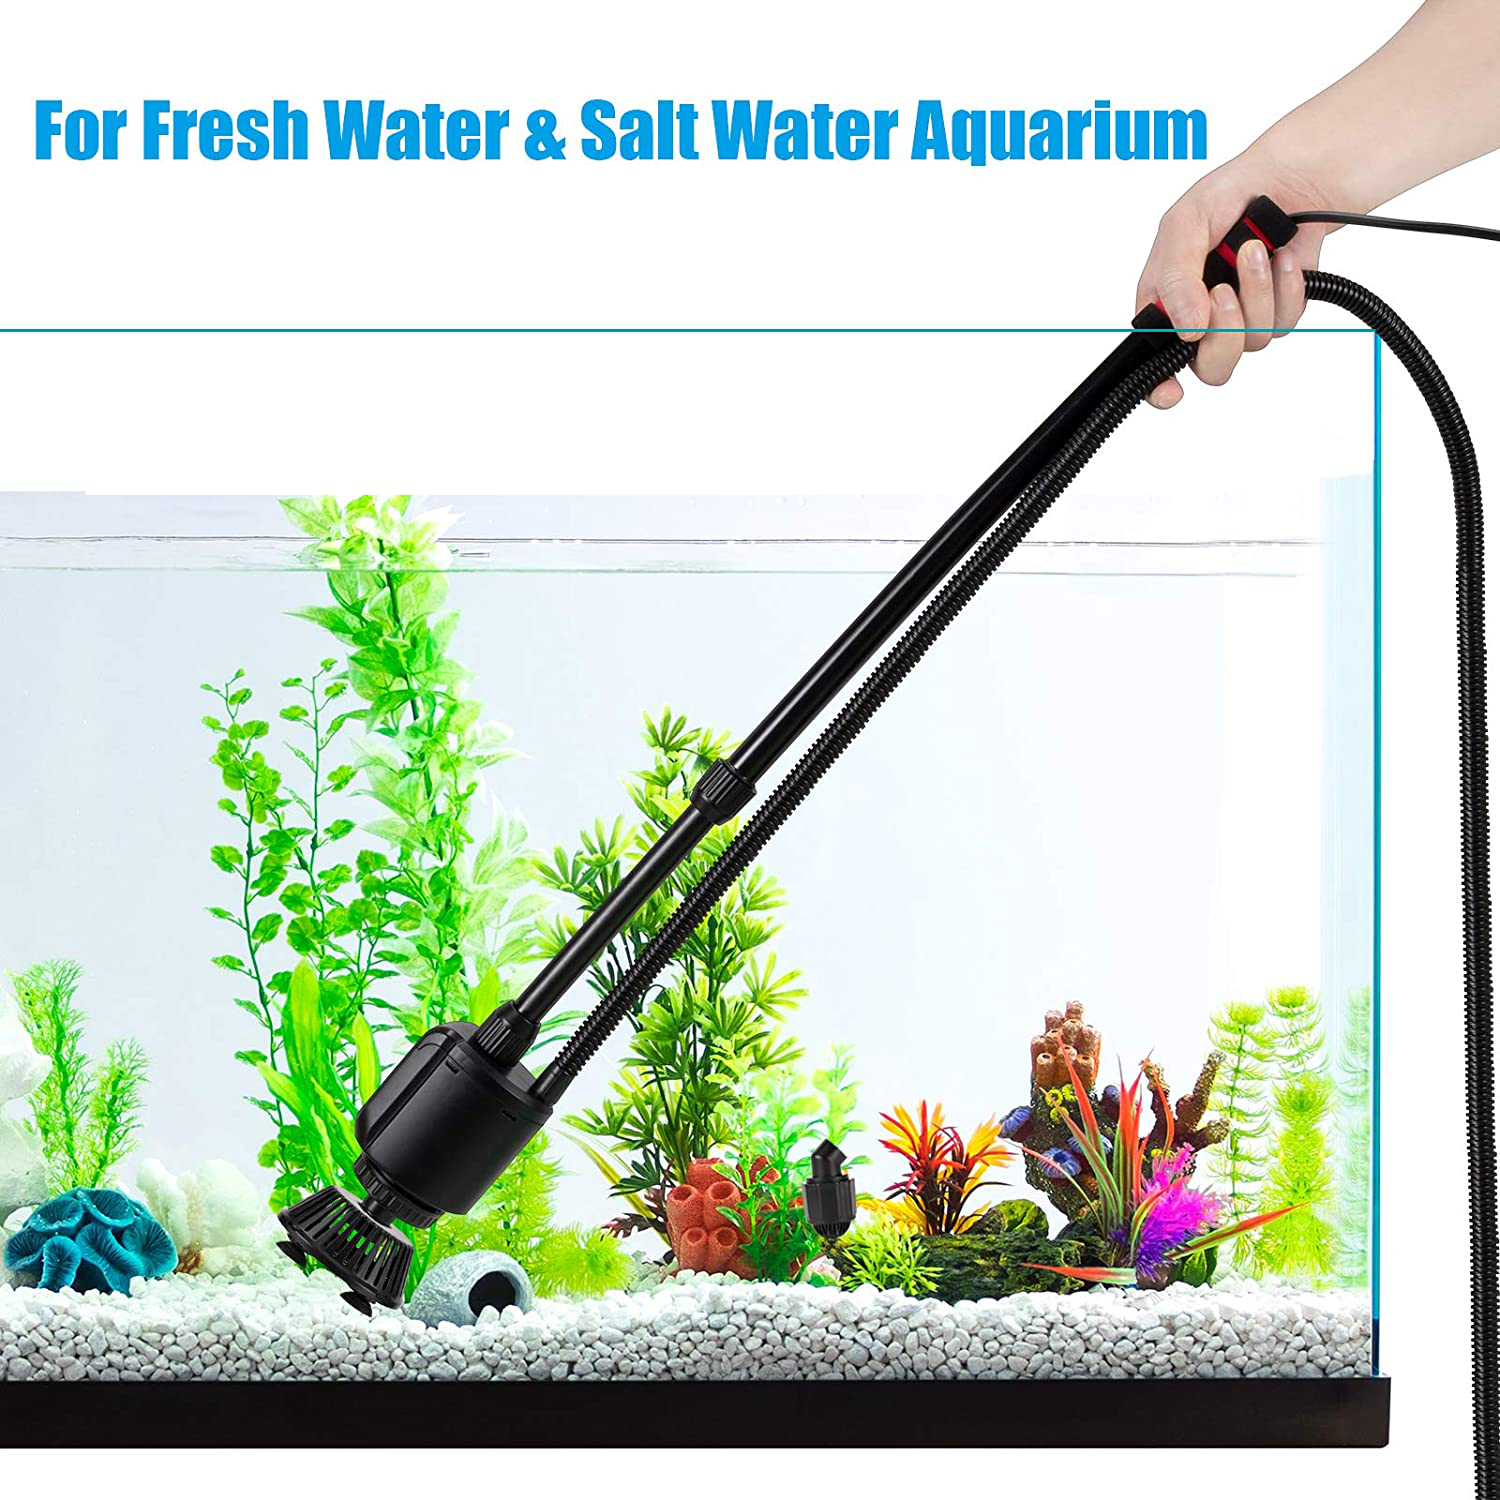 AQQA Electric Aquarium Gravel Cleaner, 6 in 1 Automatic Fish Tank